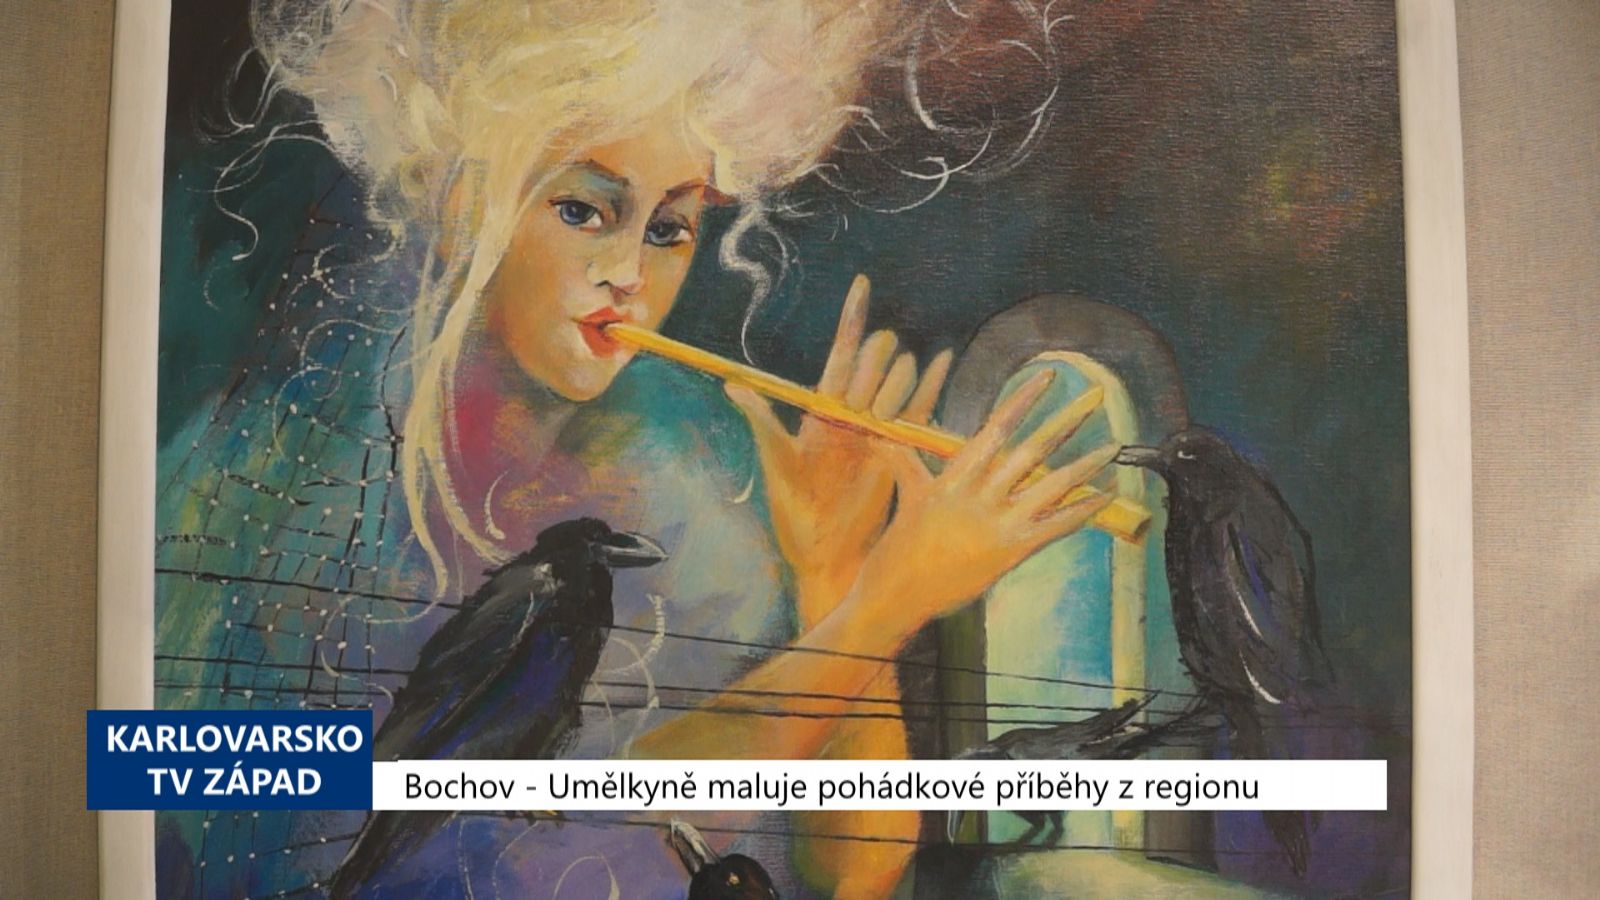 Bochov: Umělkyně maluje pohádkové příběhy z regionu (TV Západ)